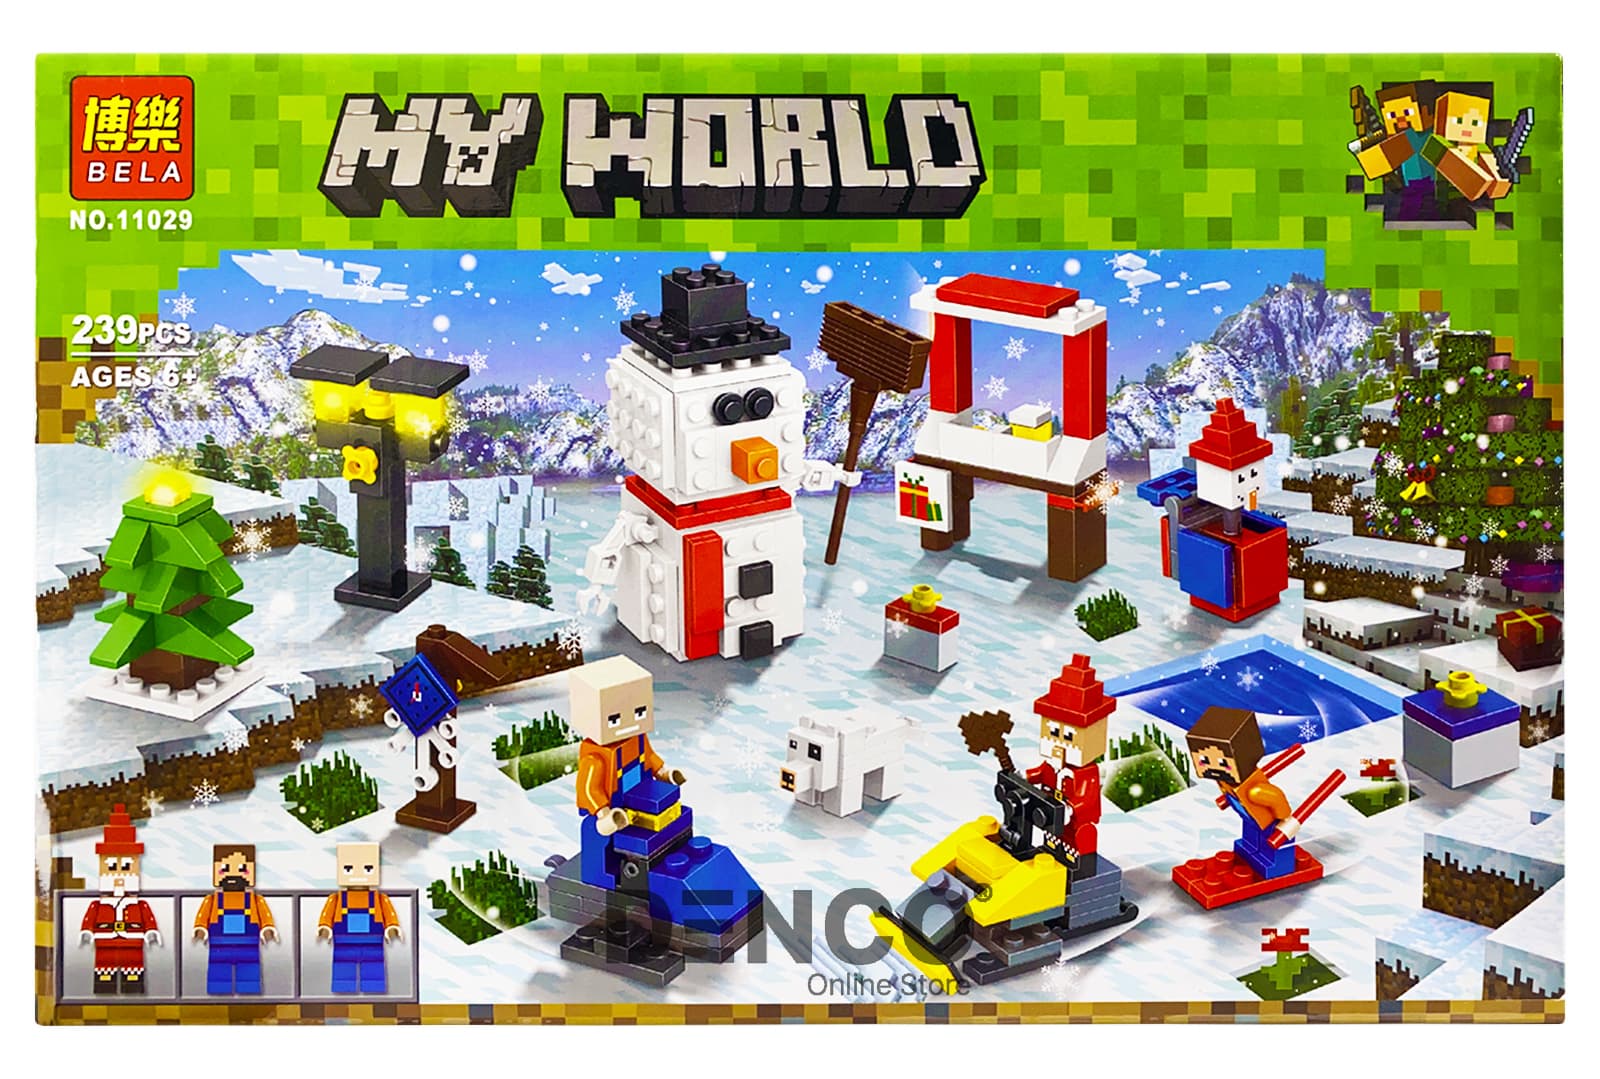 Конструктор Bl «Новый год: Зимние игры» 11029 (Minecraft) 239 деталей